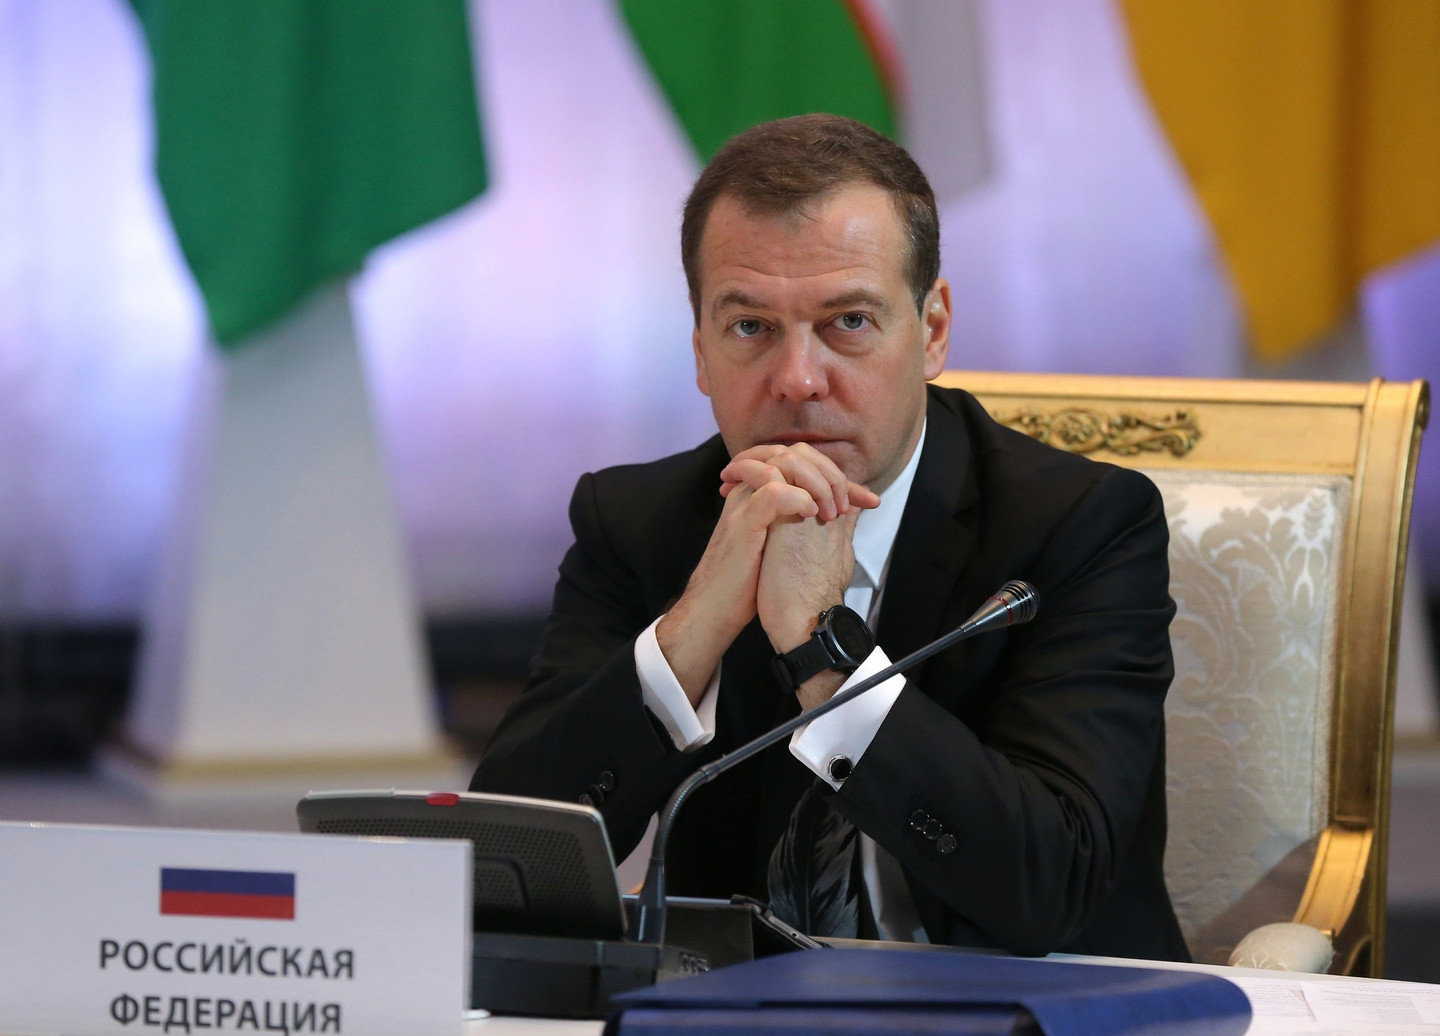 Председатель Правительства РФ Дмитрий Медведев. Фото: © VK/Дмитрий Медведев
